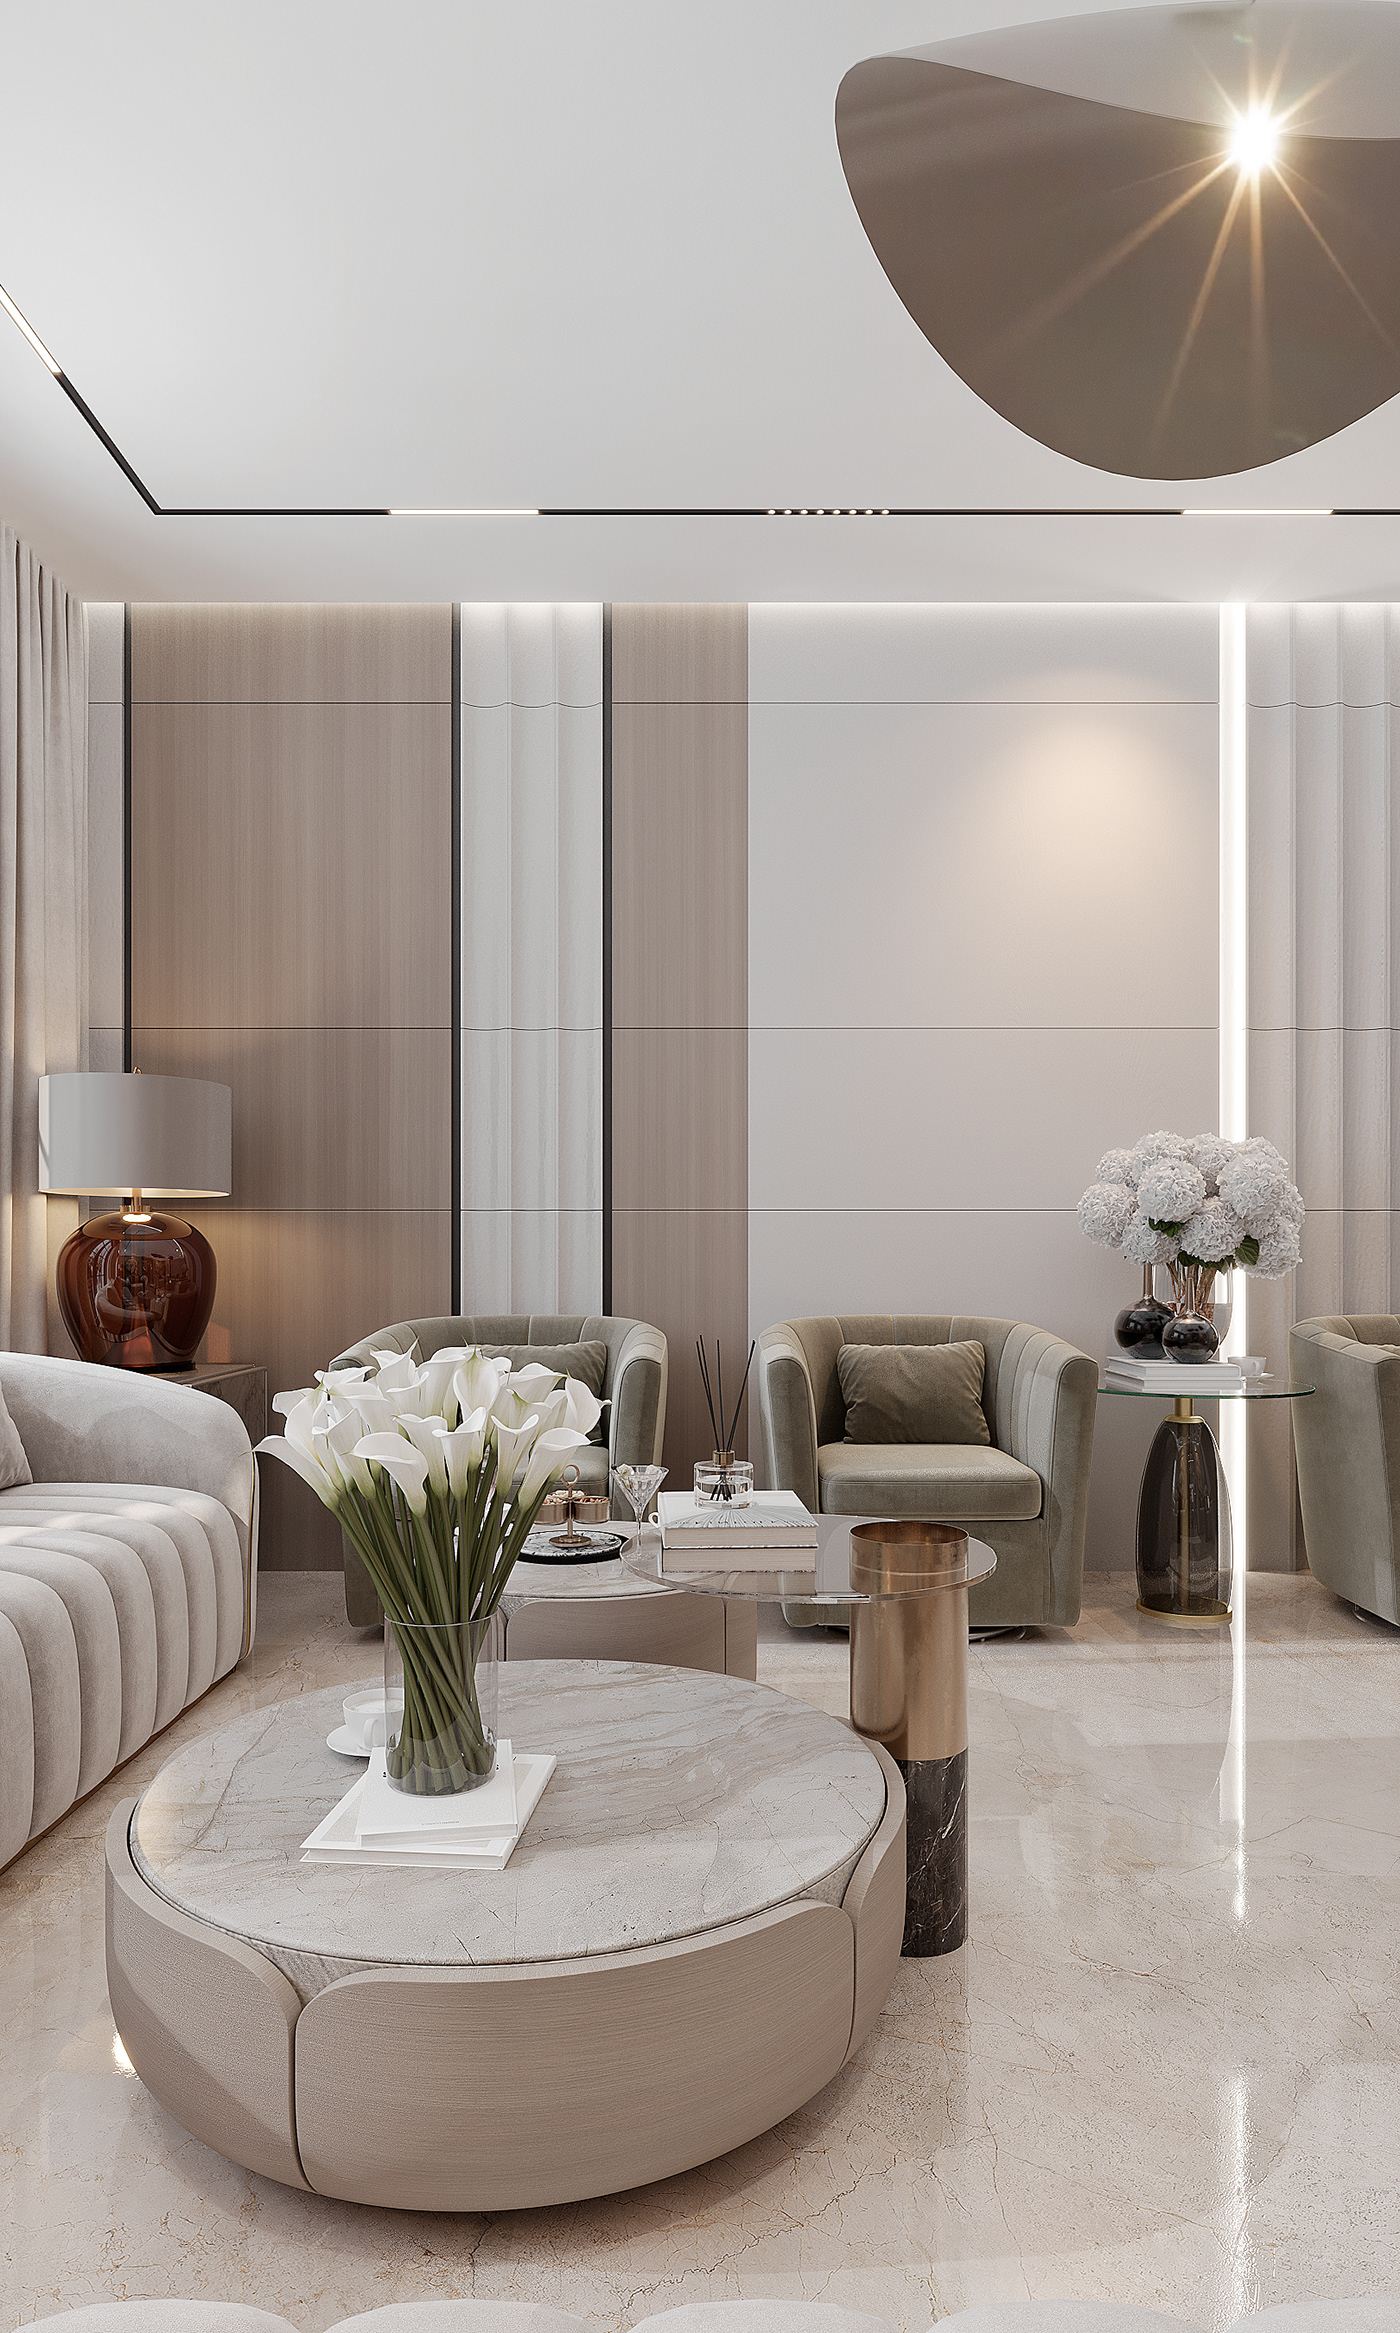 design interior design  architecture visualization Render reception luxury living room kitchen Interior